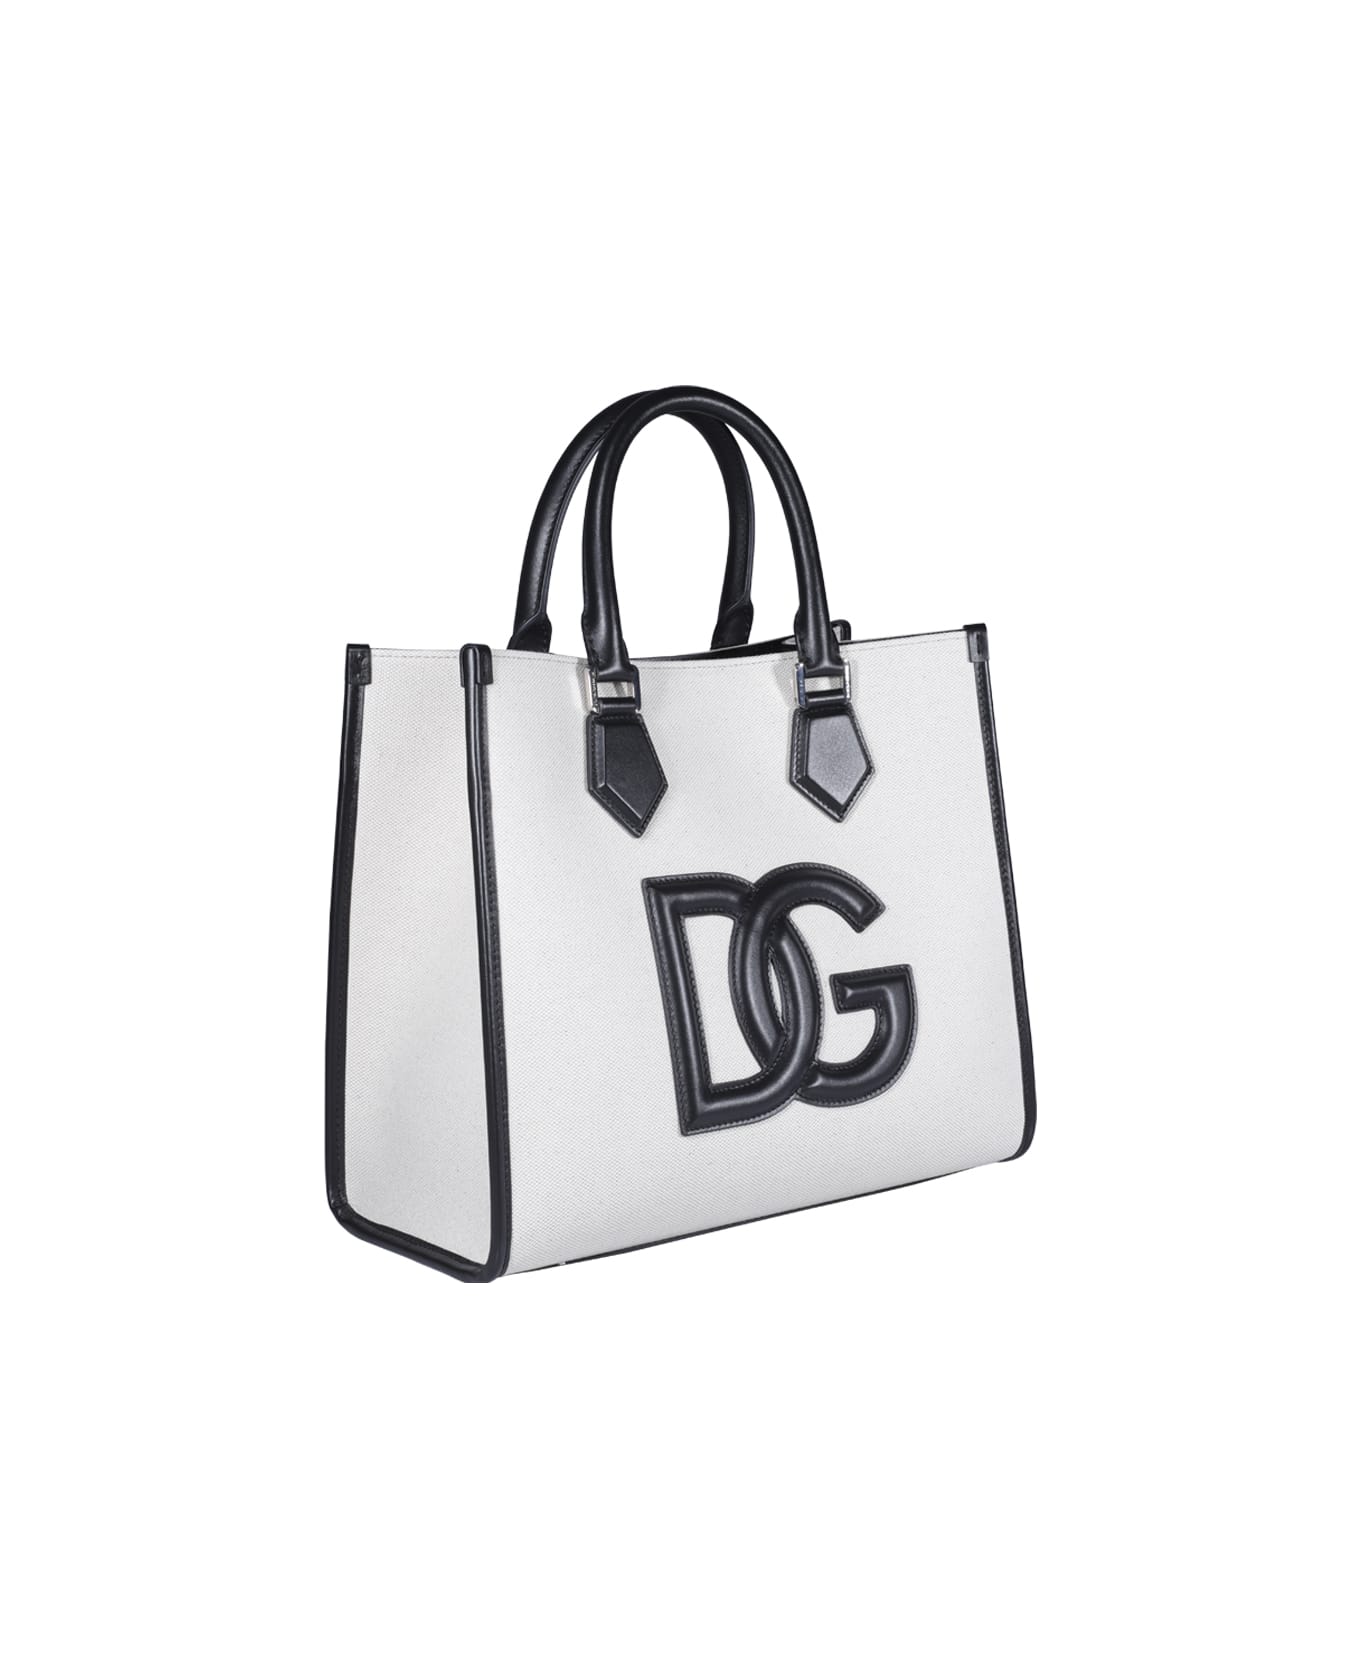 Dolce & Gabbana Shopping Bag - Beige